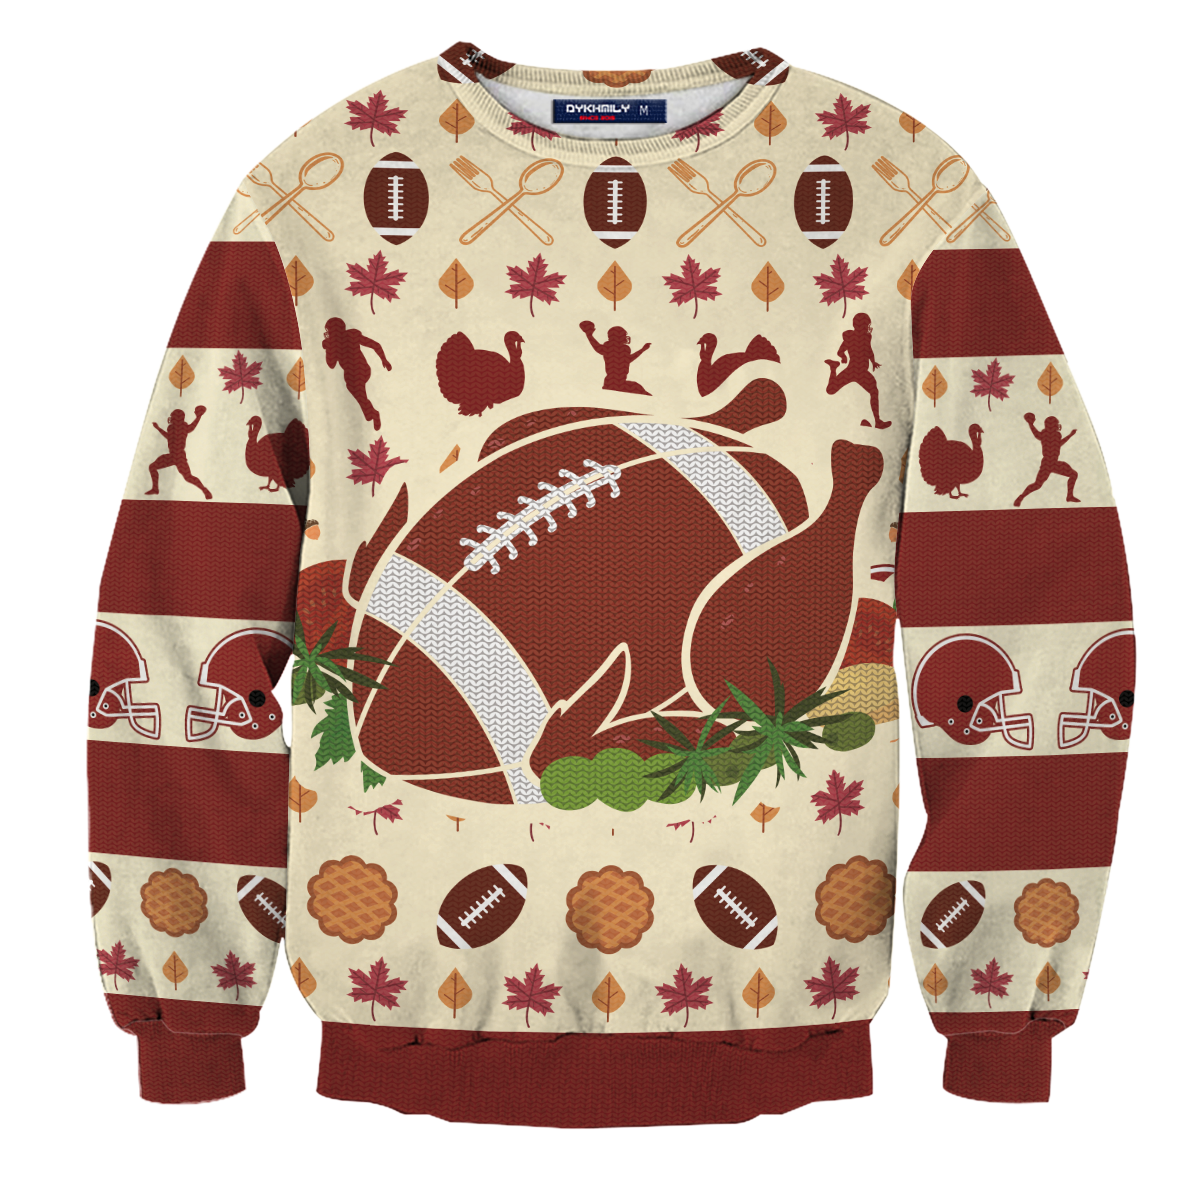 Turkey Football Unisex Sweater